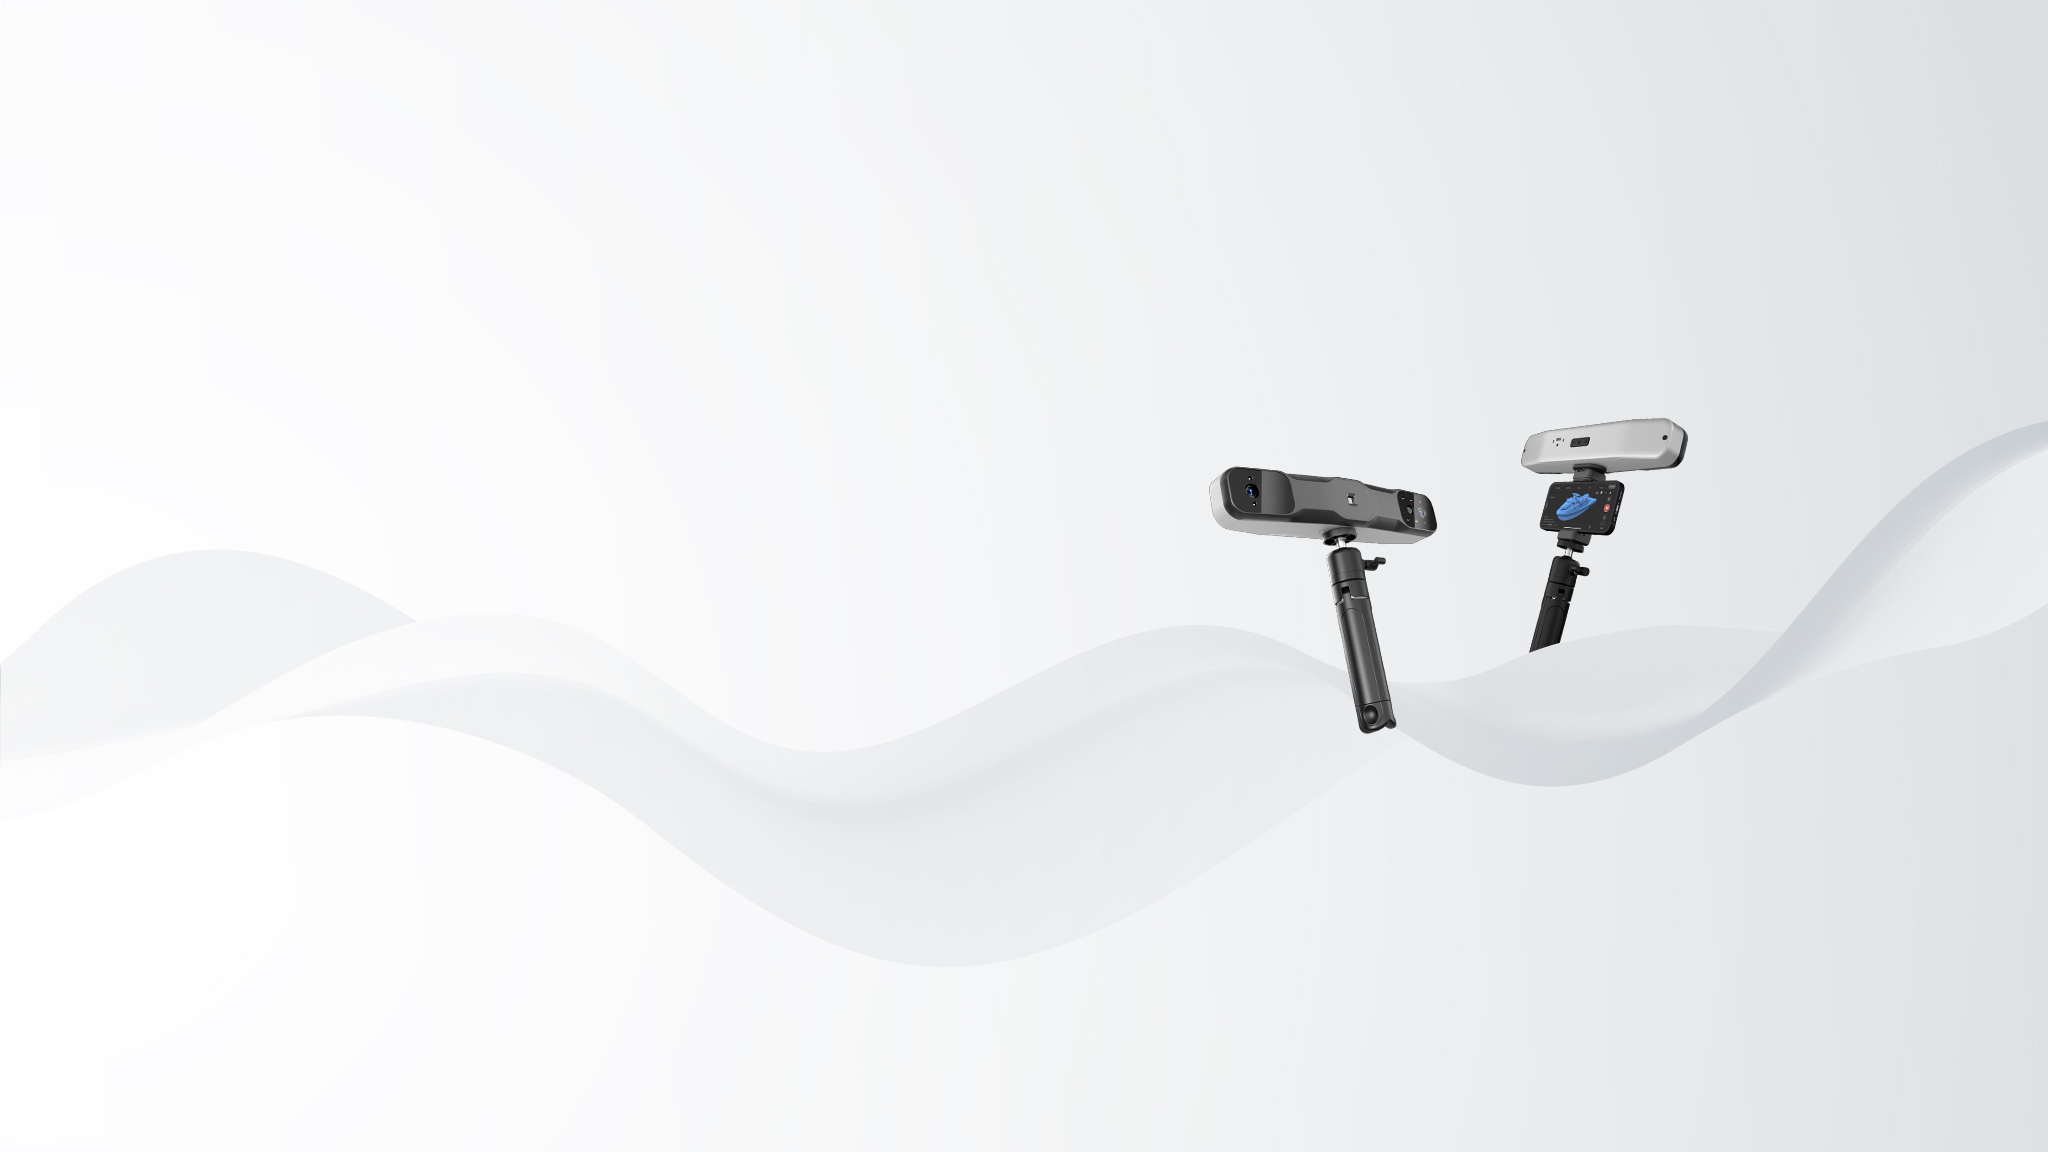 Revopoint presenta su nuevo escáner 3D Revopoint RANGE 2: especificaciones técnicas y precios